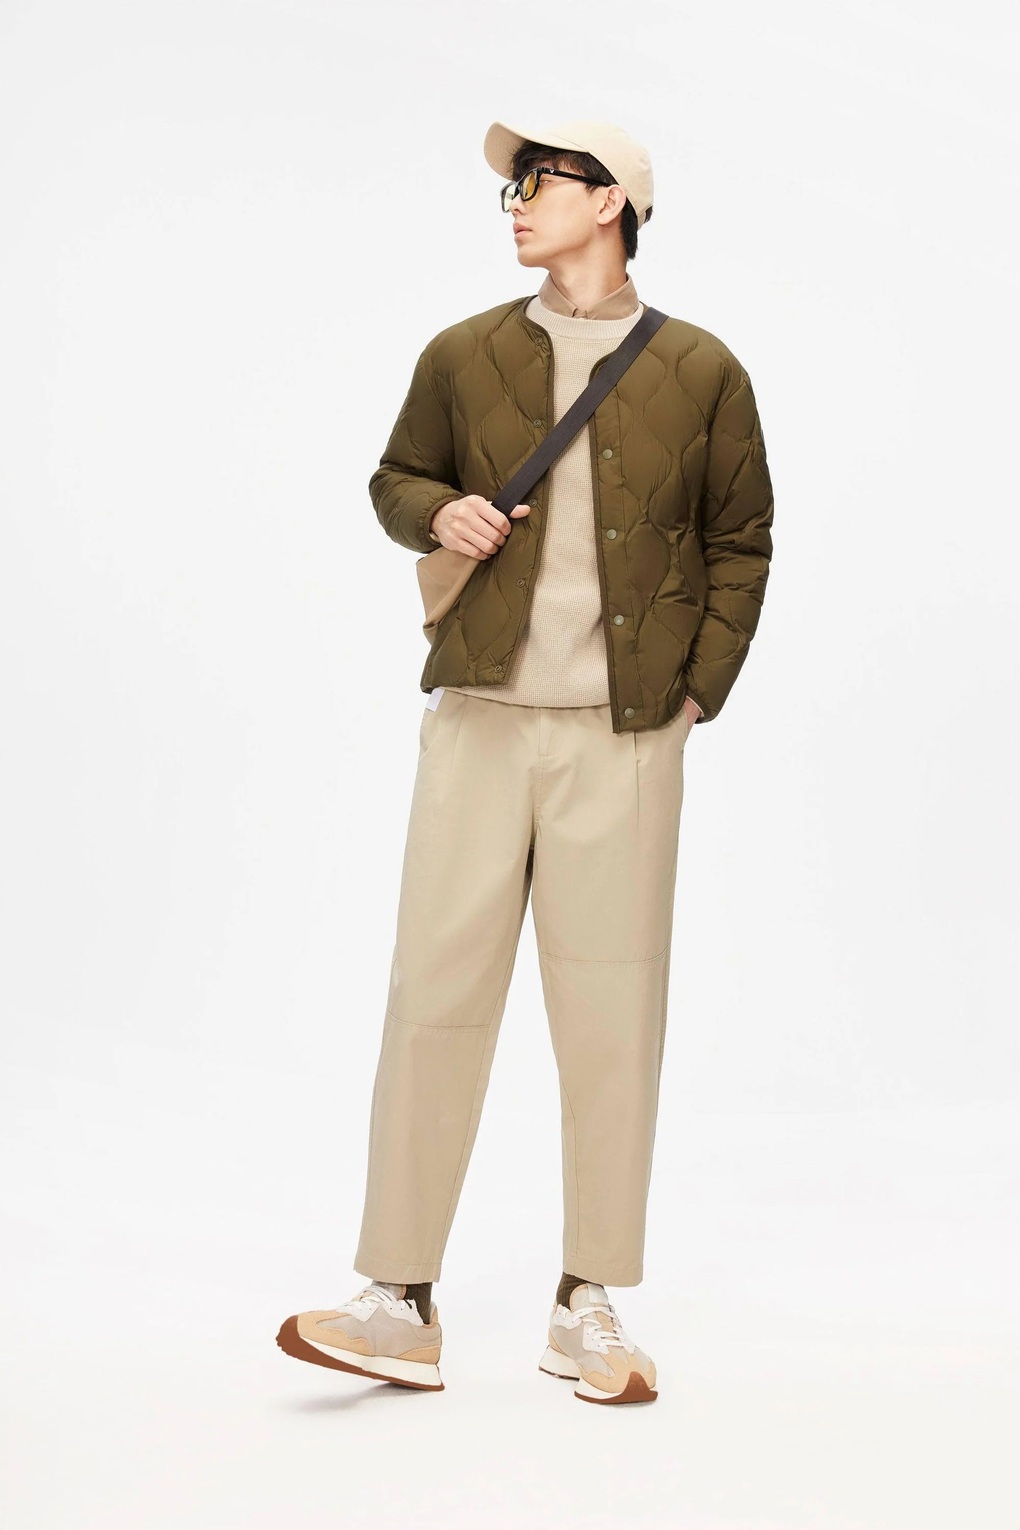 7 mẫu áo khoác giúp nam giới mặc đẹp vào mùa lạnh - Ảnh 1.